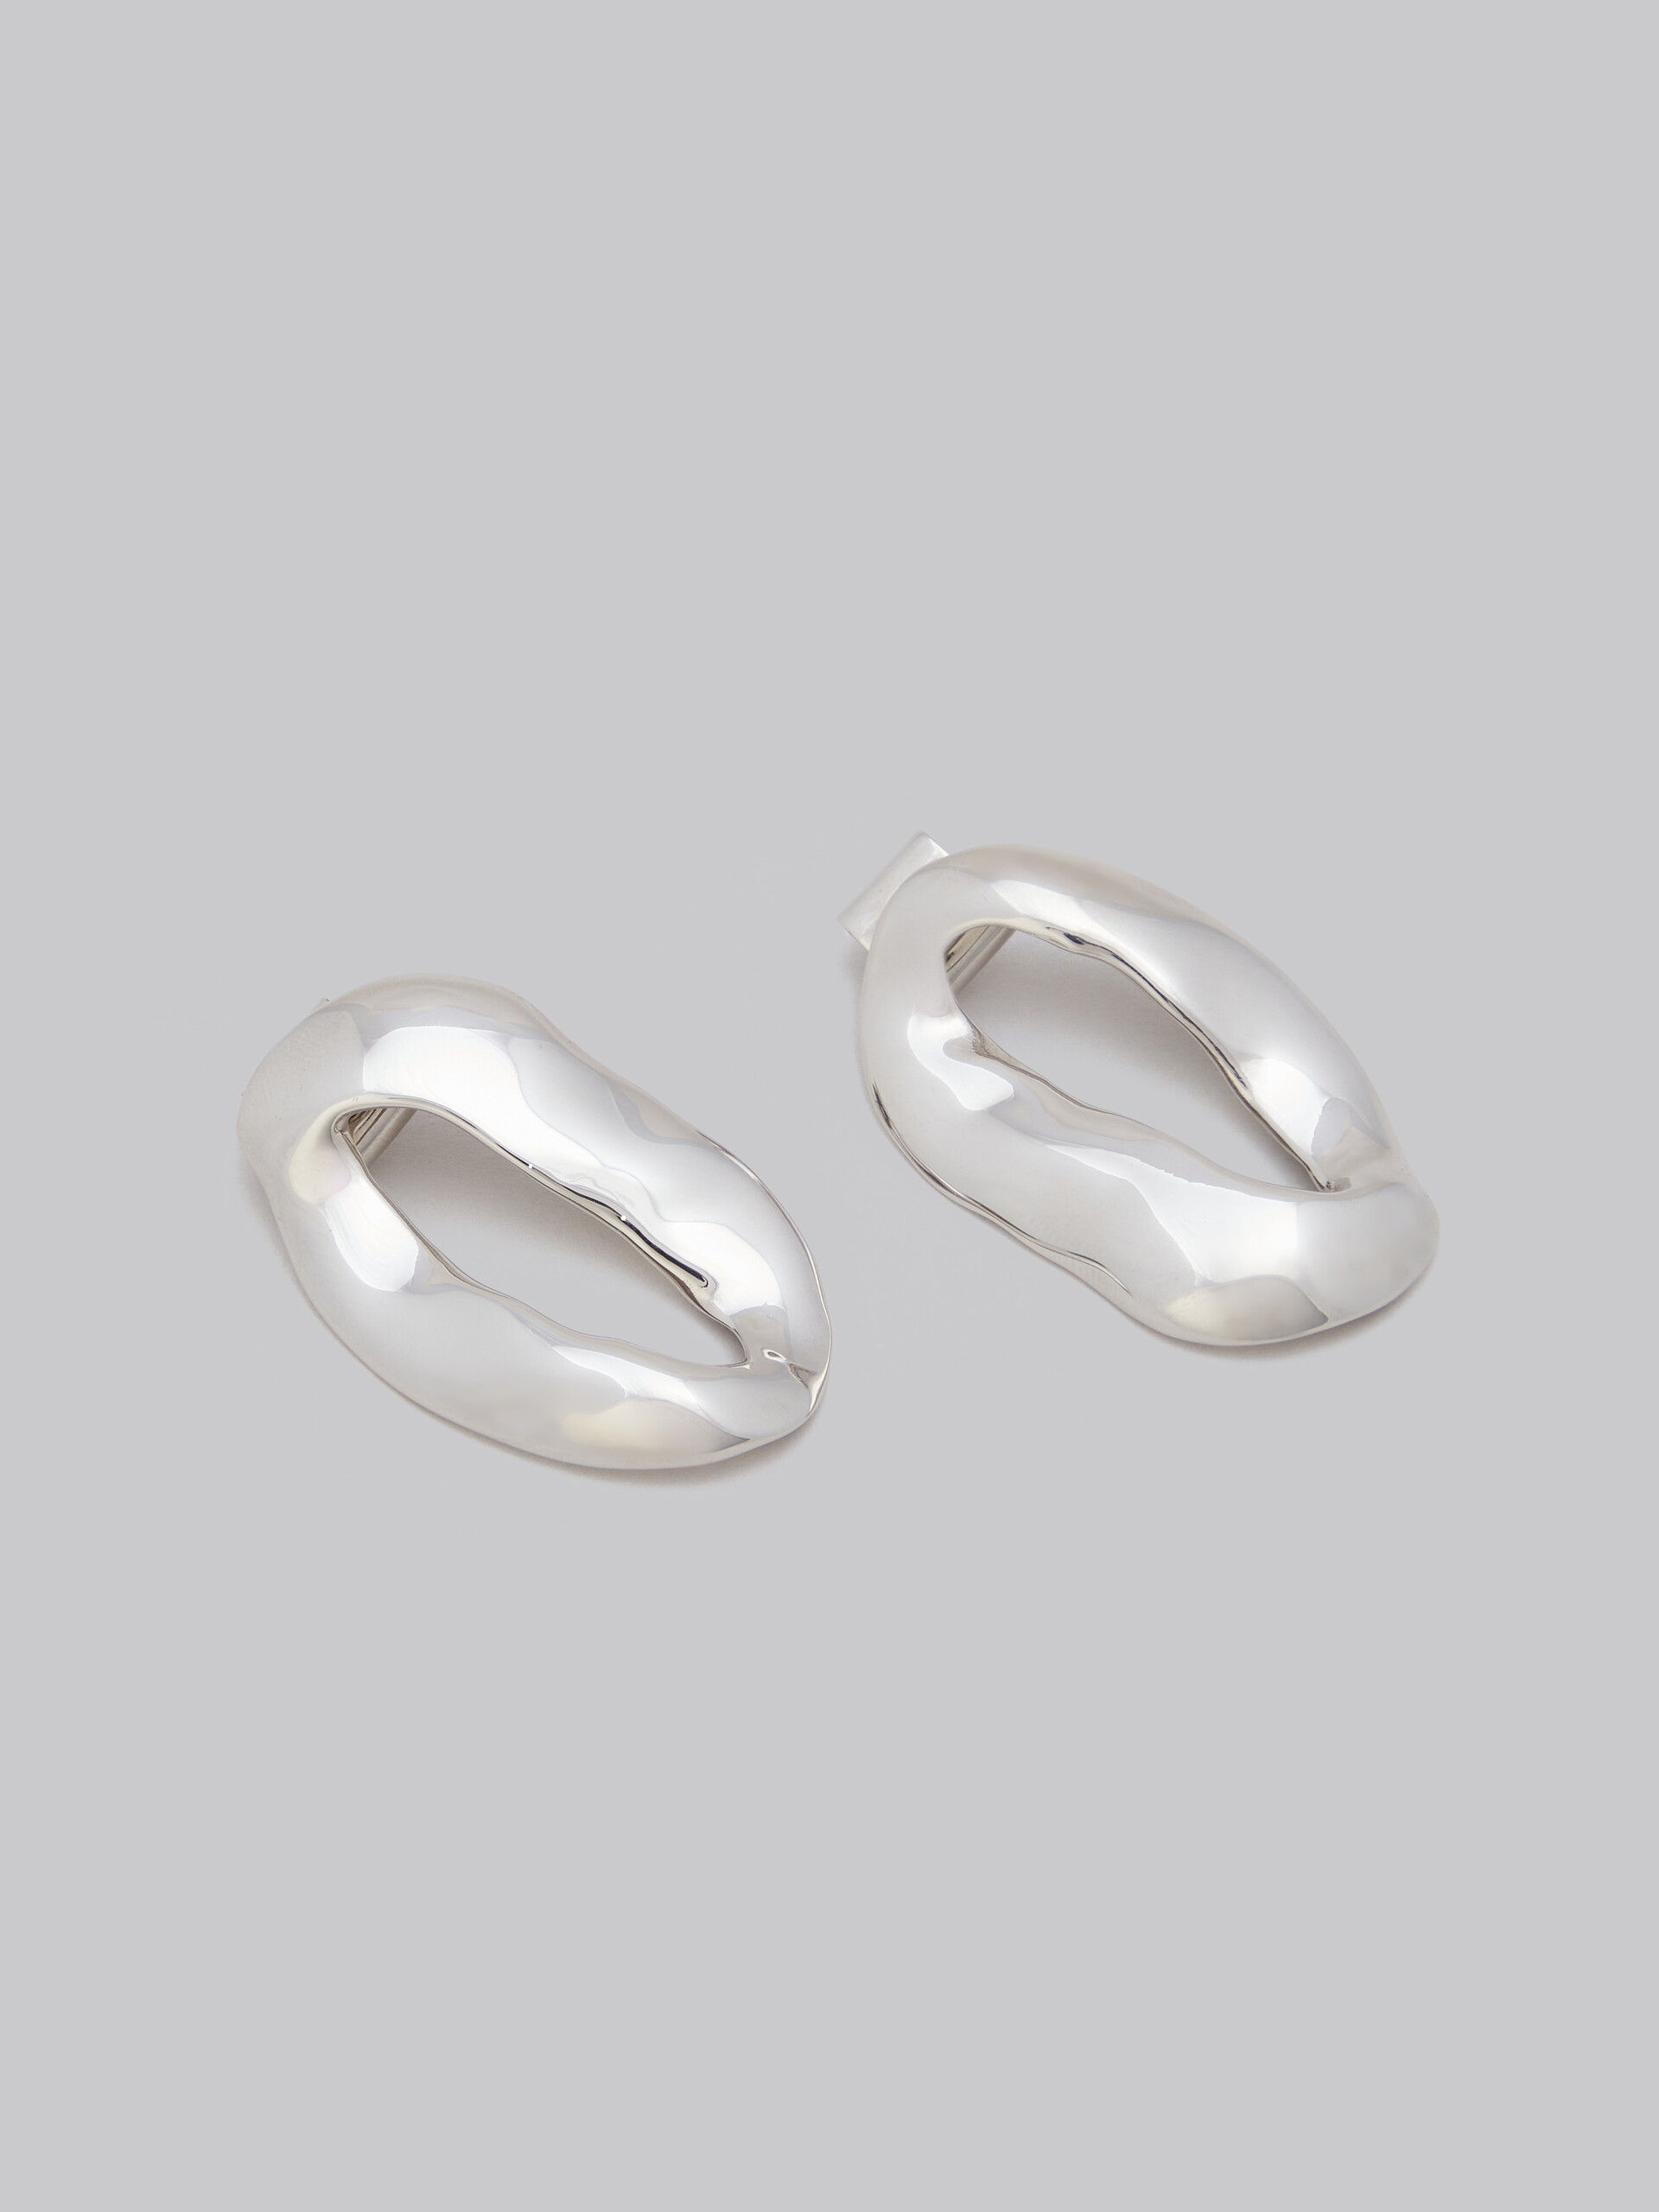 Oversized irregular ring earrings - Earrings - Image 4